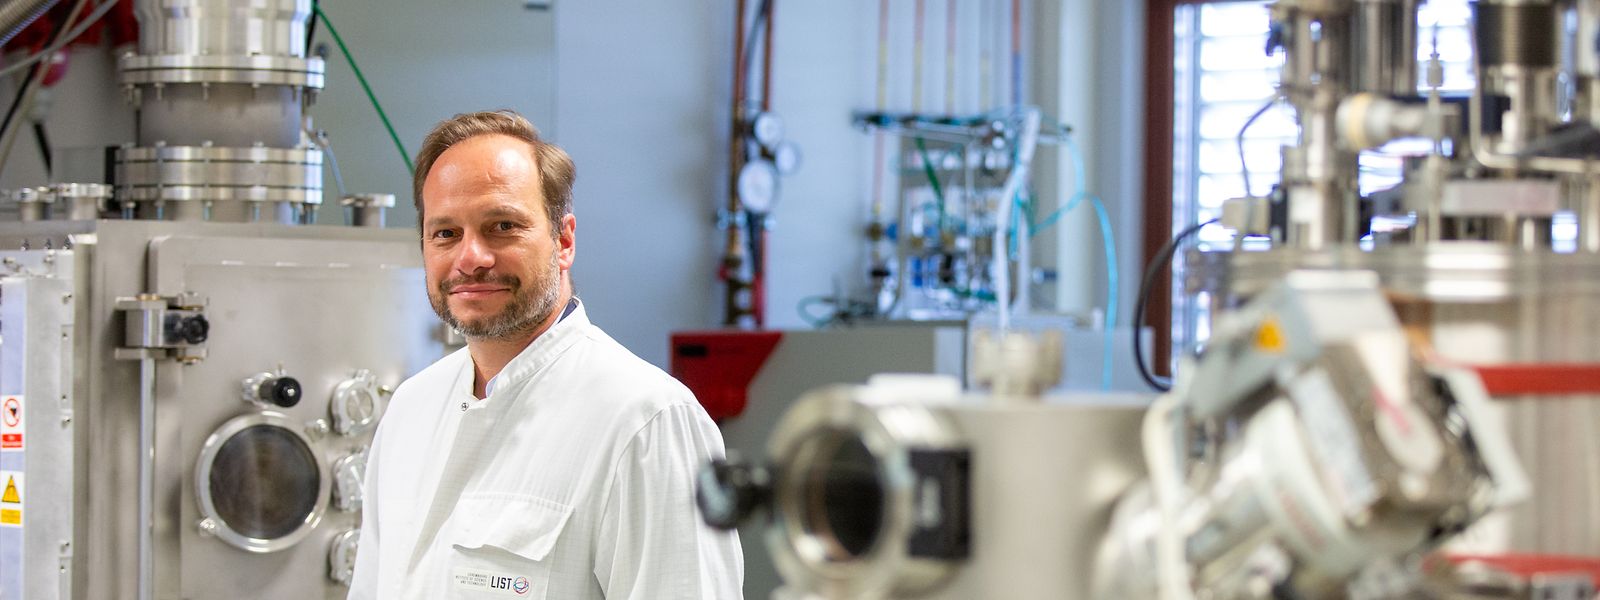 Damien Lenoble vom Luxembourg Institute of Science and Technology arbeitet mit seinem Team an einer effizienteren Wasserstofftechnologie.